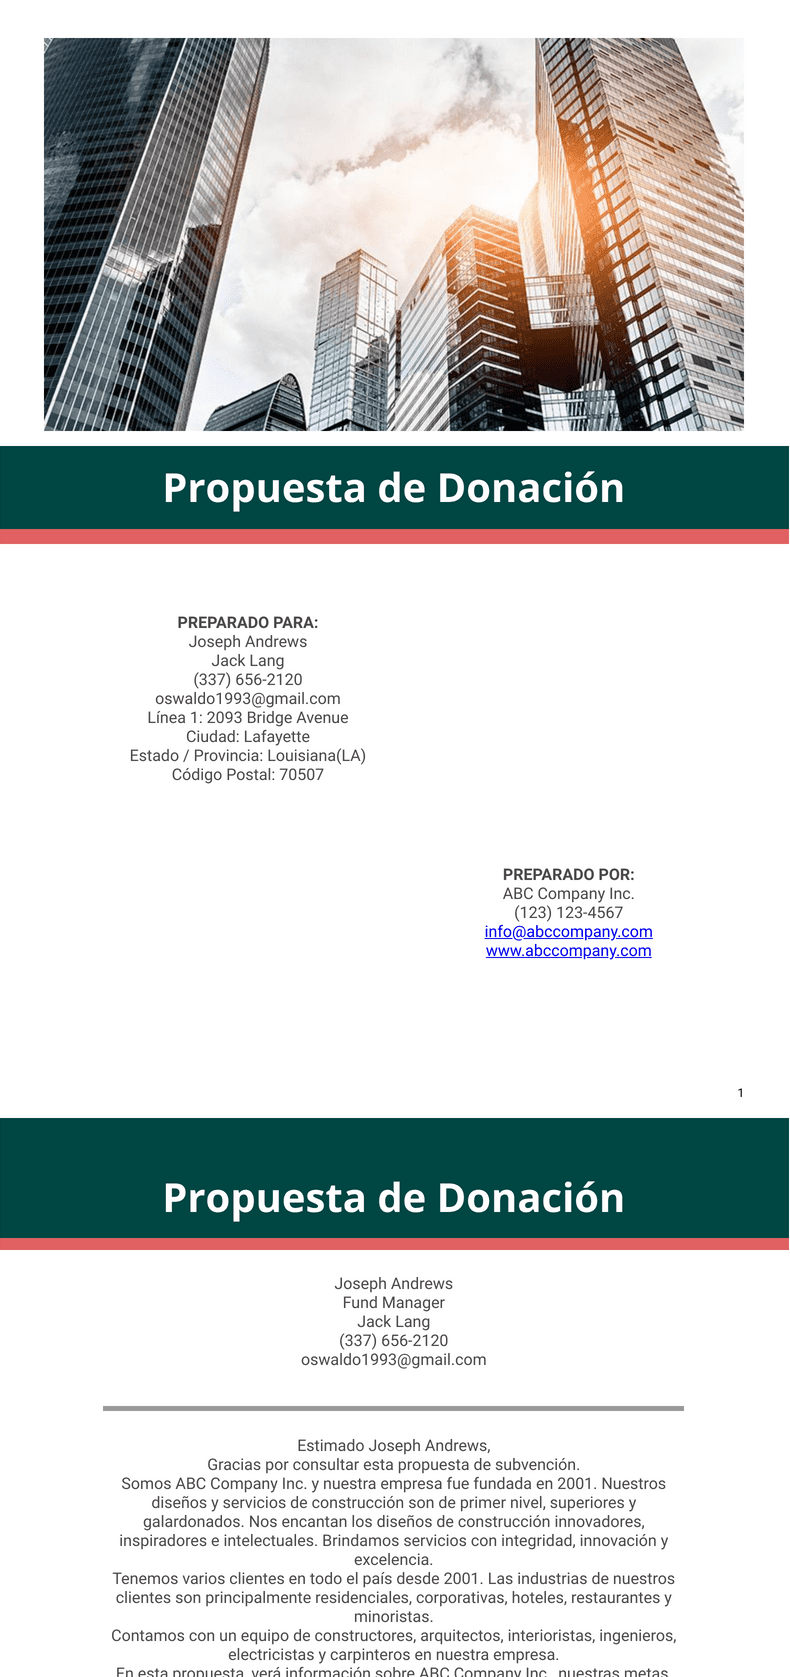 Propuesta de Donación